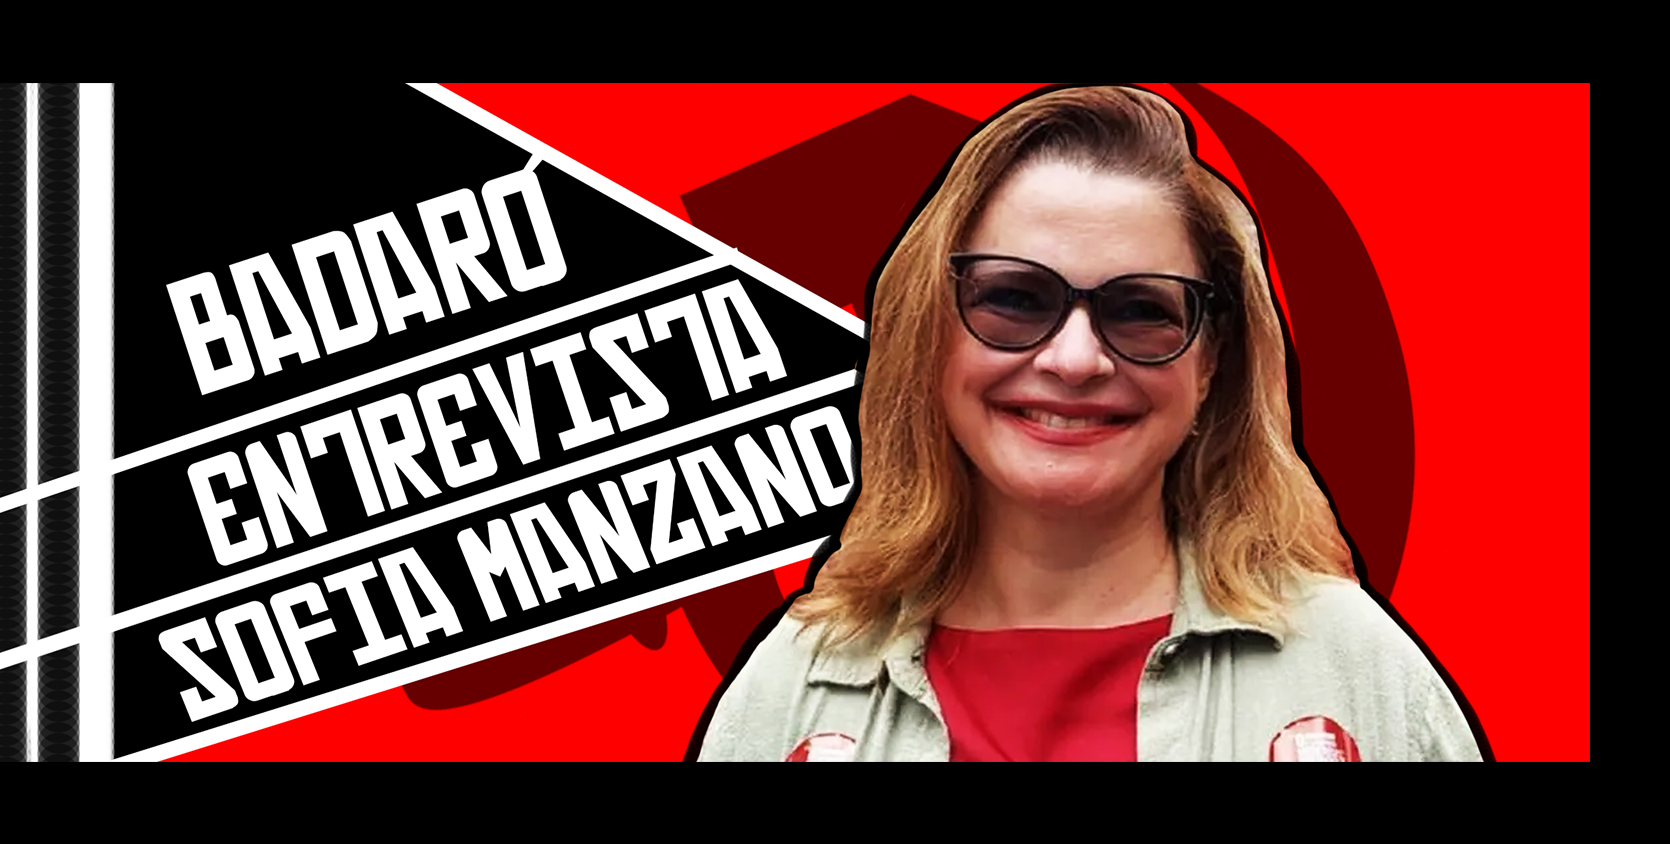 Badaró entrevista Sofia Manzano, candidata à Presidência da República